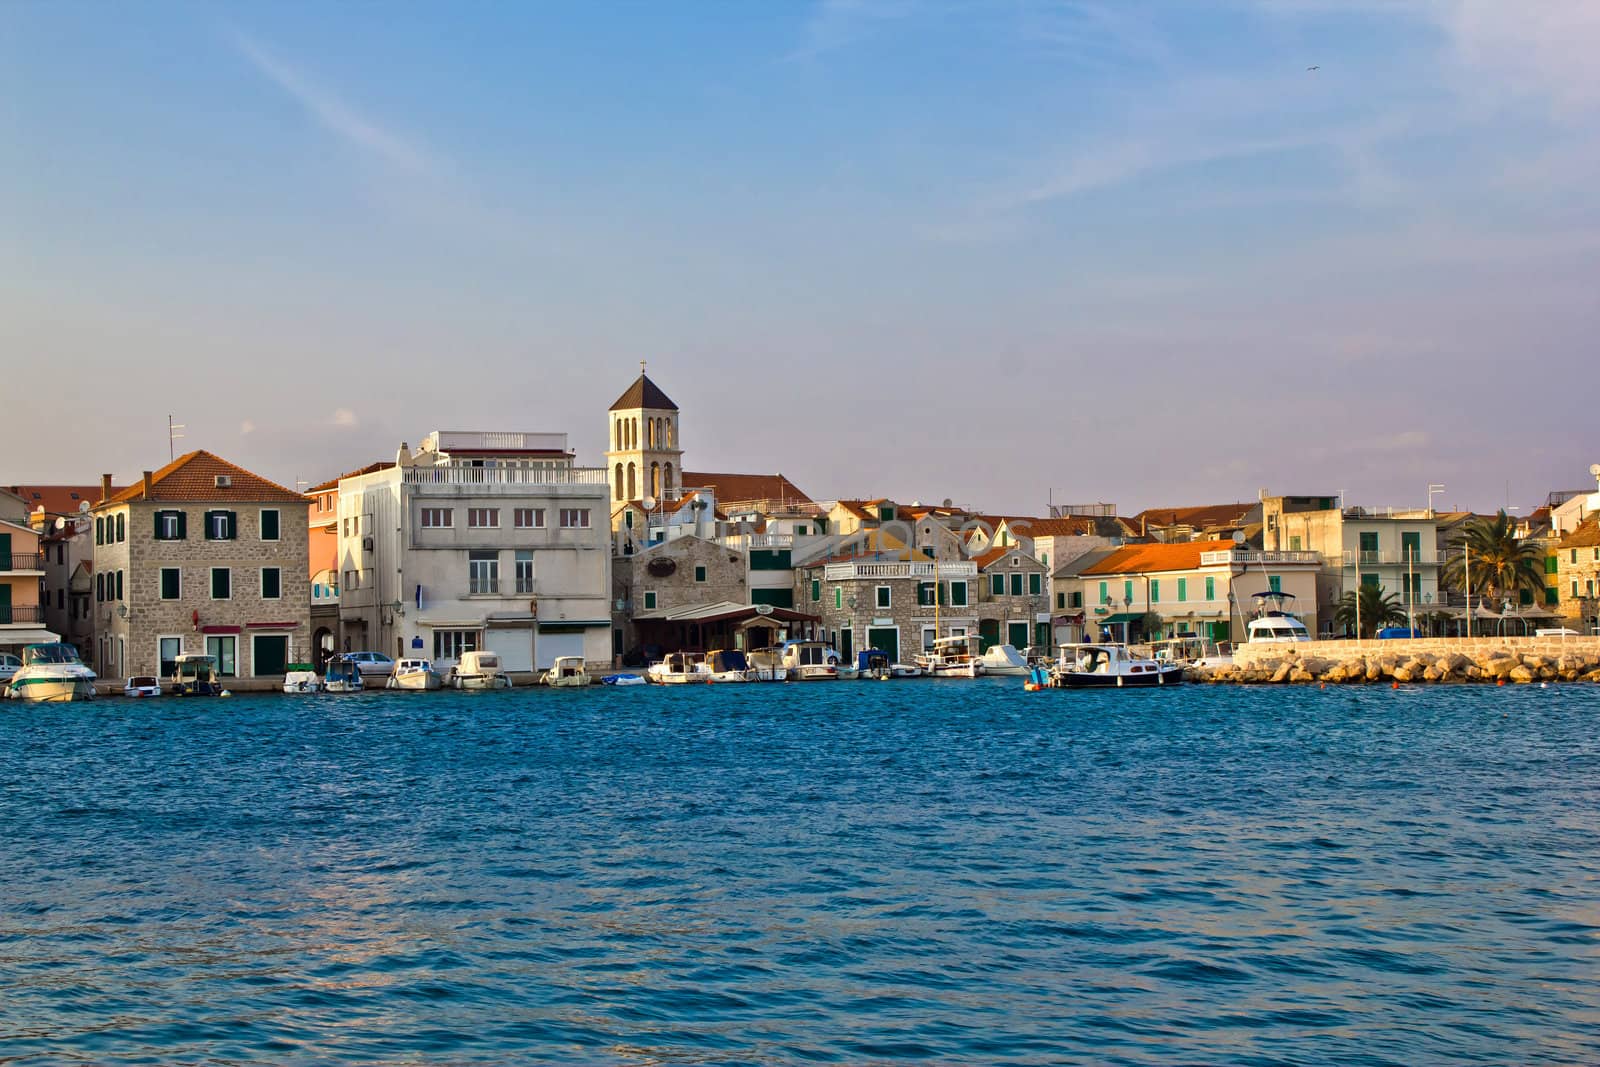 Adriatic town of Vodice waterfront, Dalmatia, Croatia by xbrchx